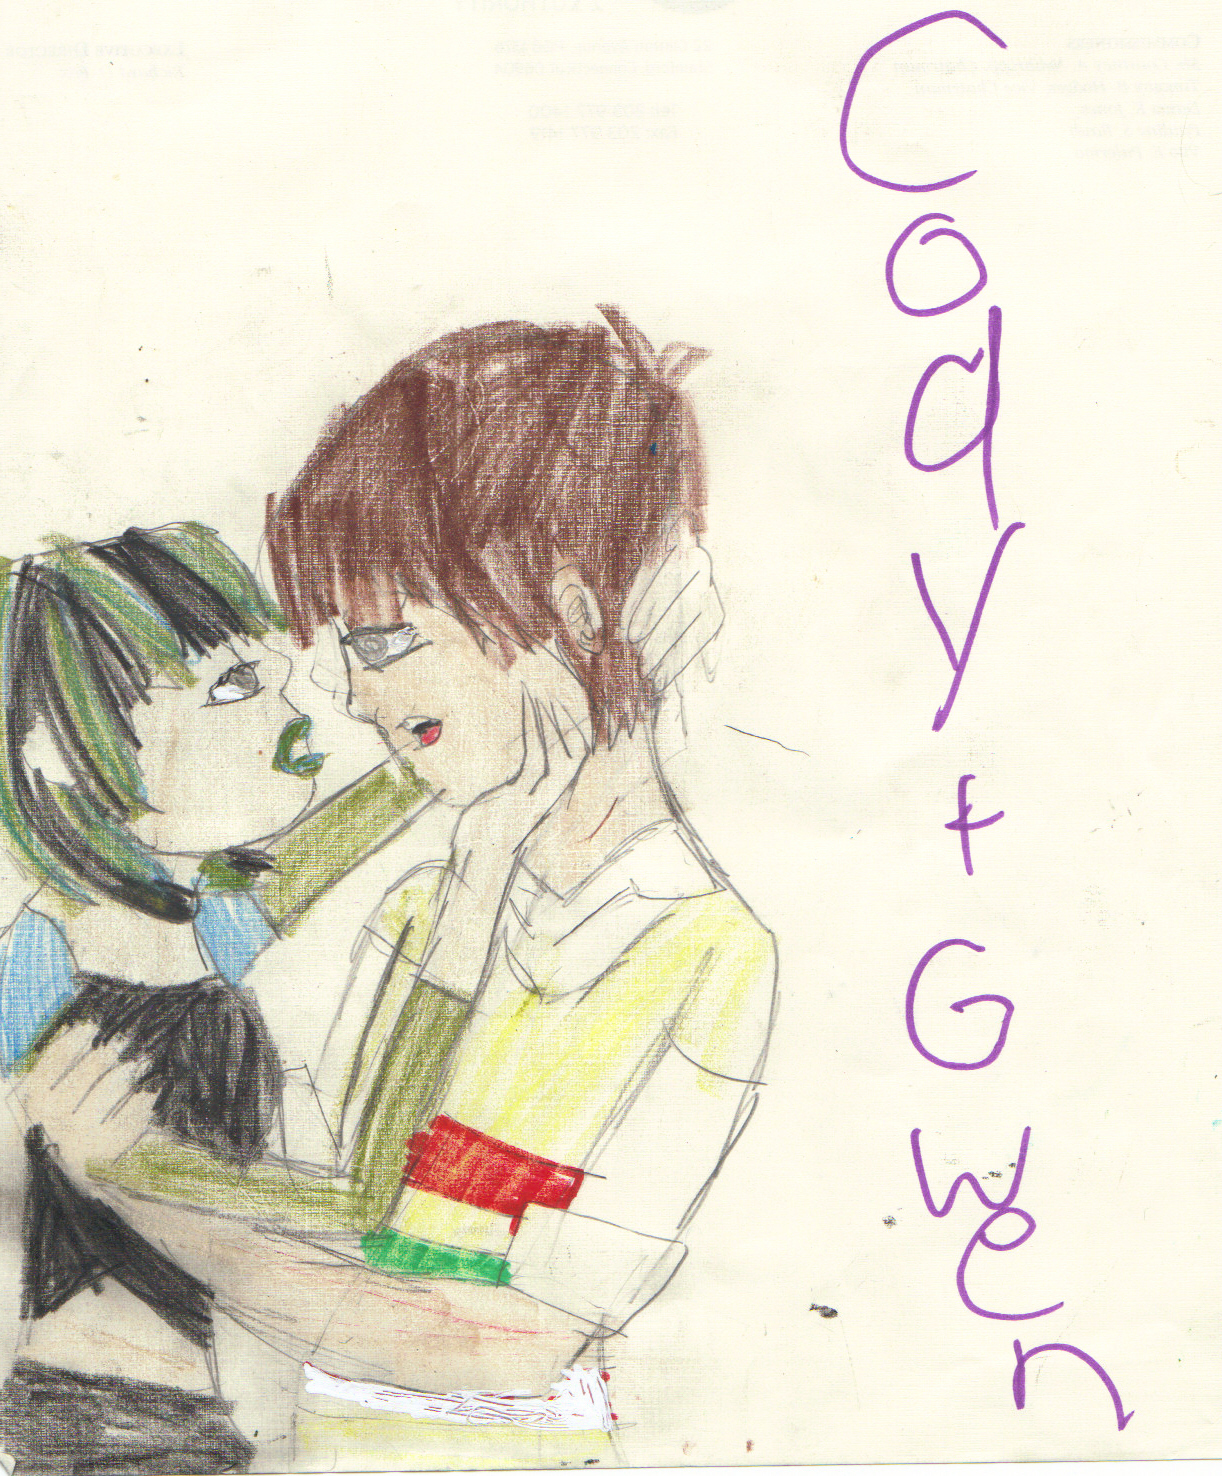 Fan Art of codyXgwen for fans of Gwen and Cody ♥. 